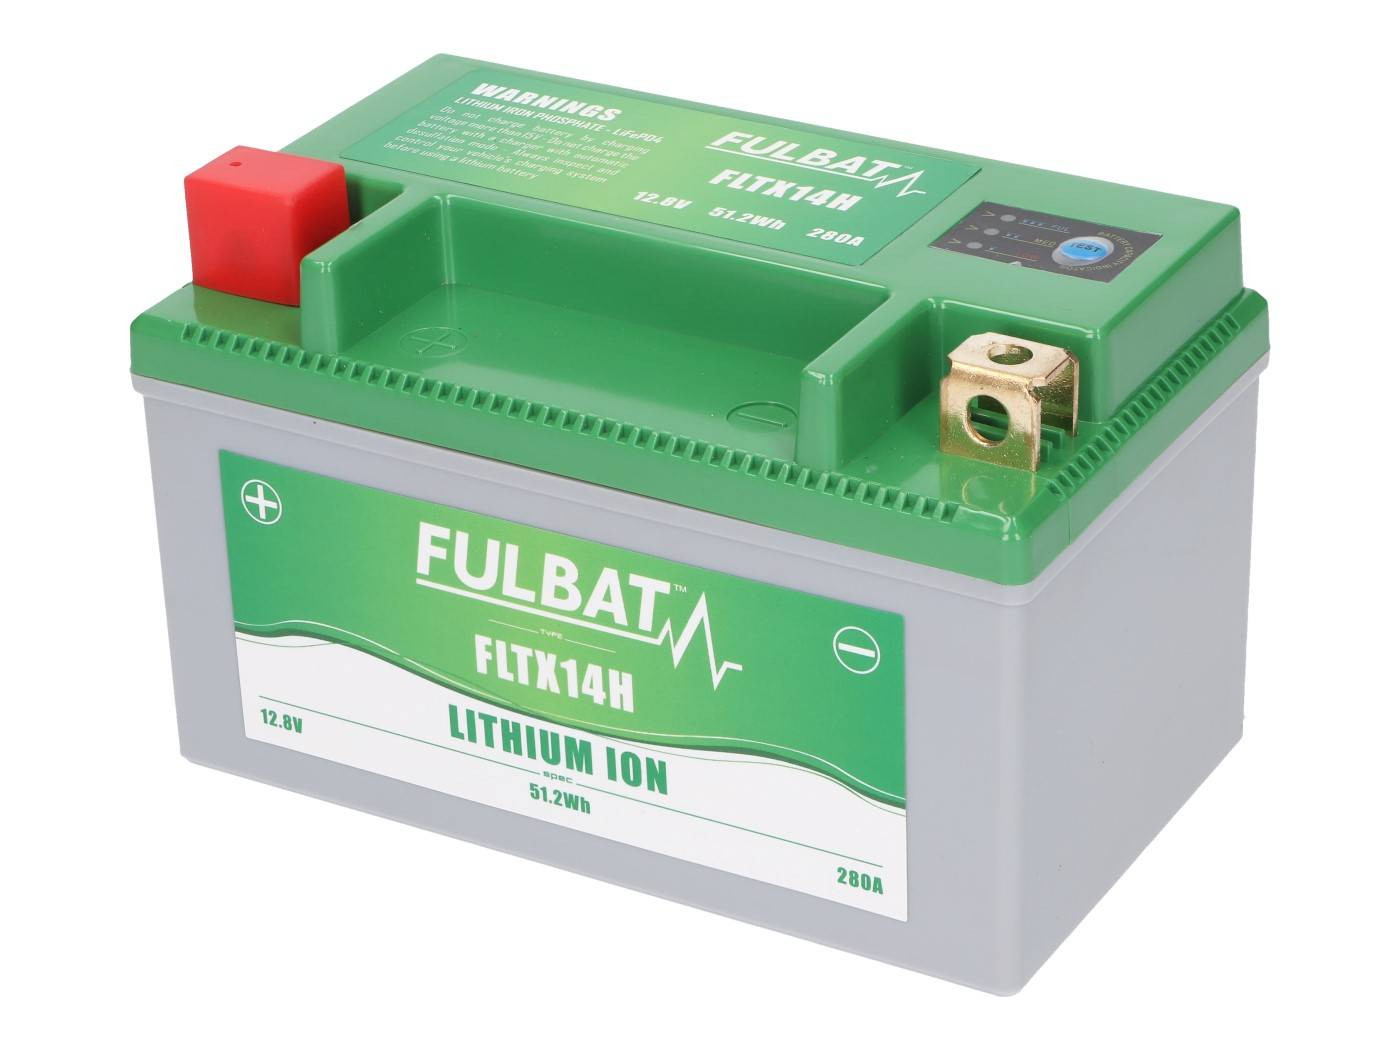 Fulbat FLTX14H lítium-ion akkumulátor